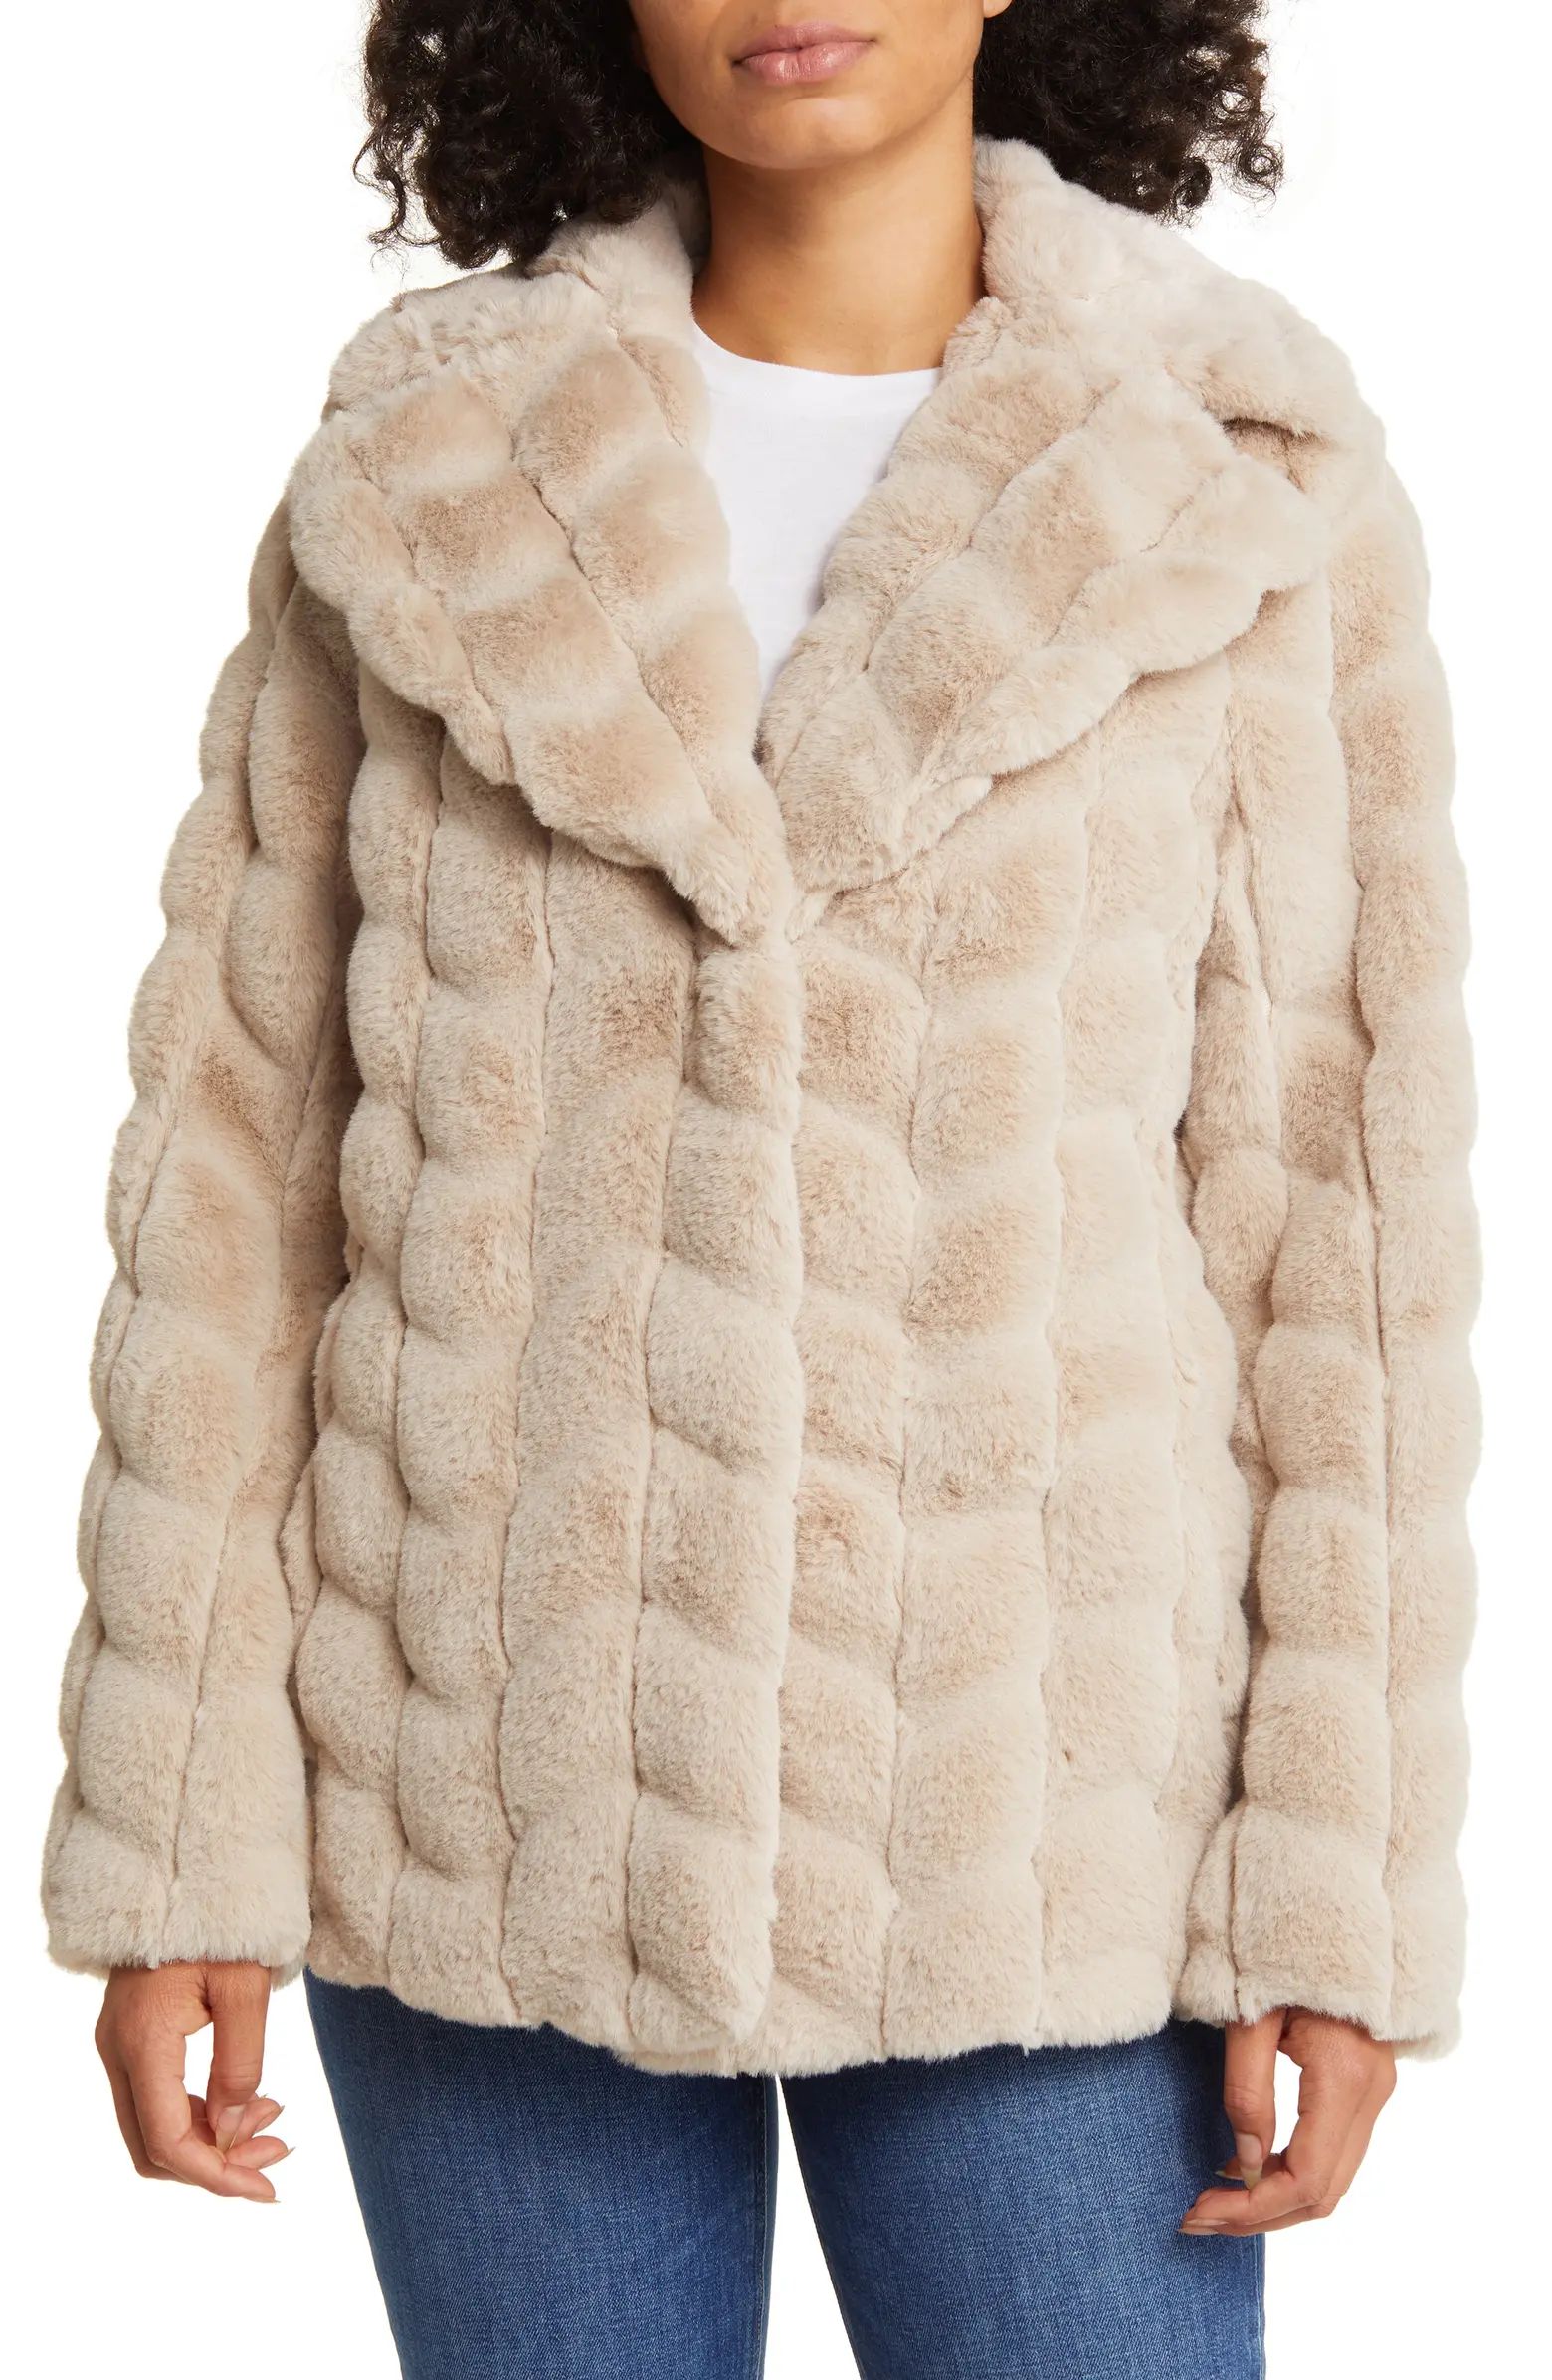 Grooved Herringbone Faux Fur Jacket | Nordstrom